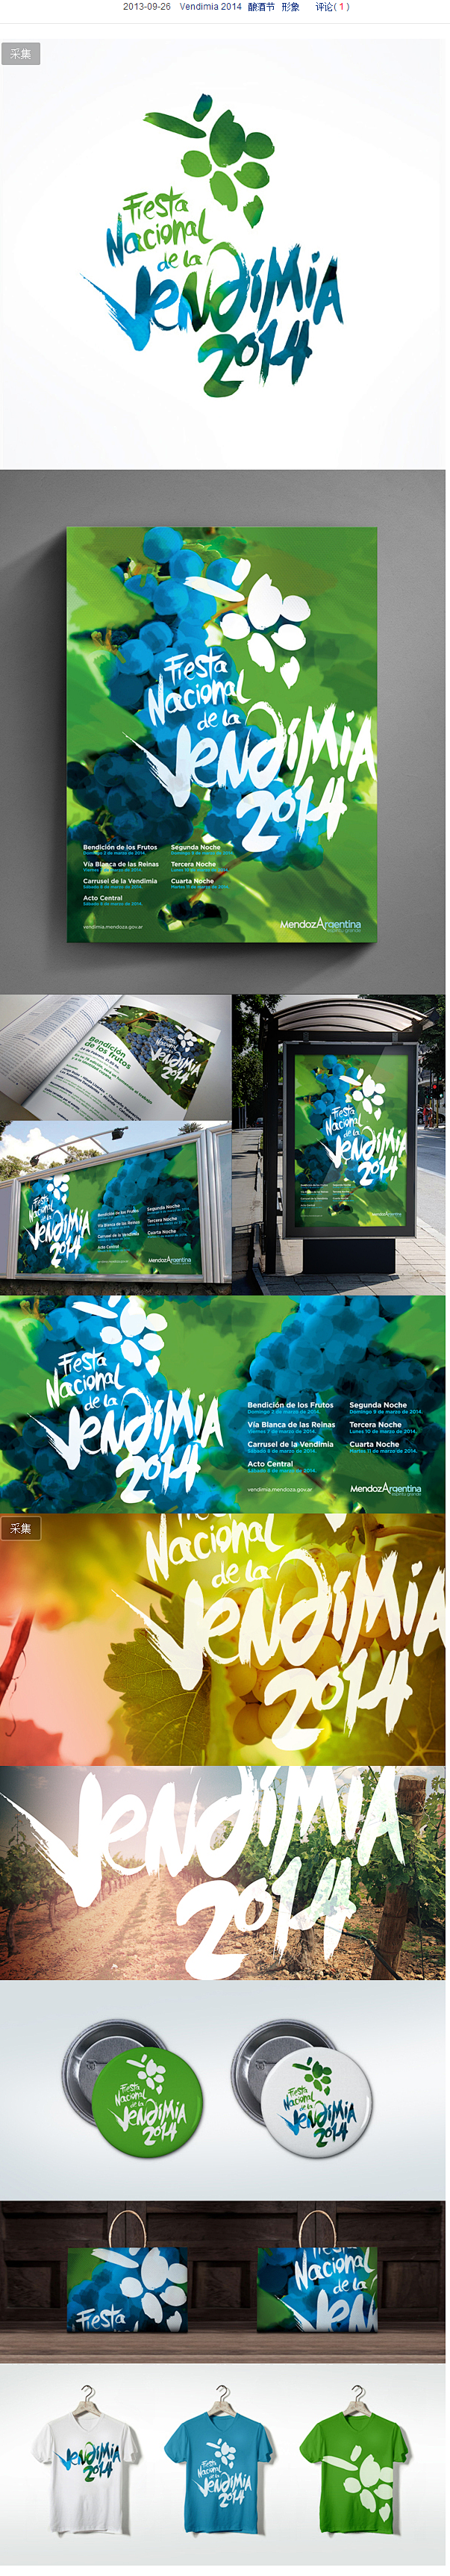 阿根廷Vendimia 2014酿酒节形...